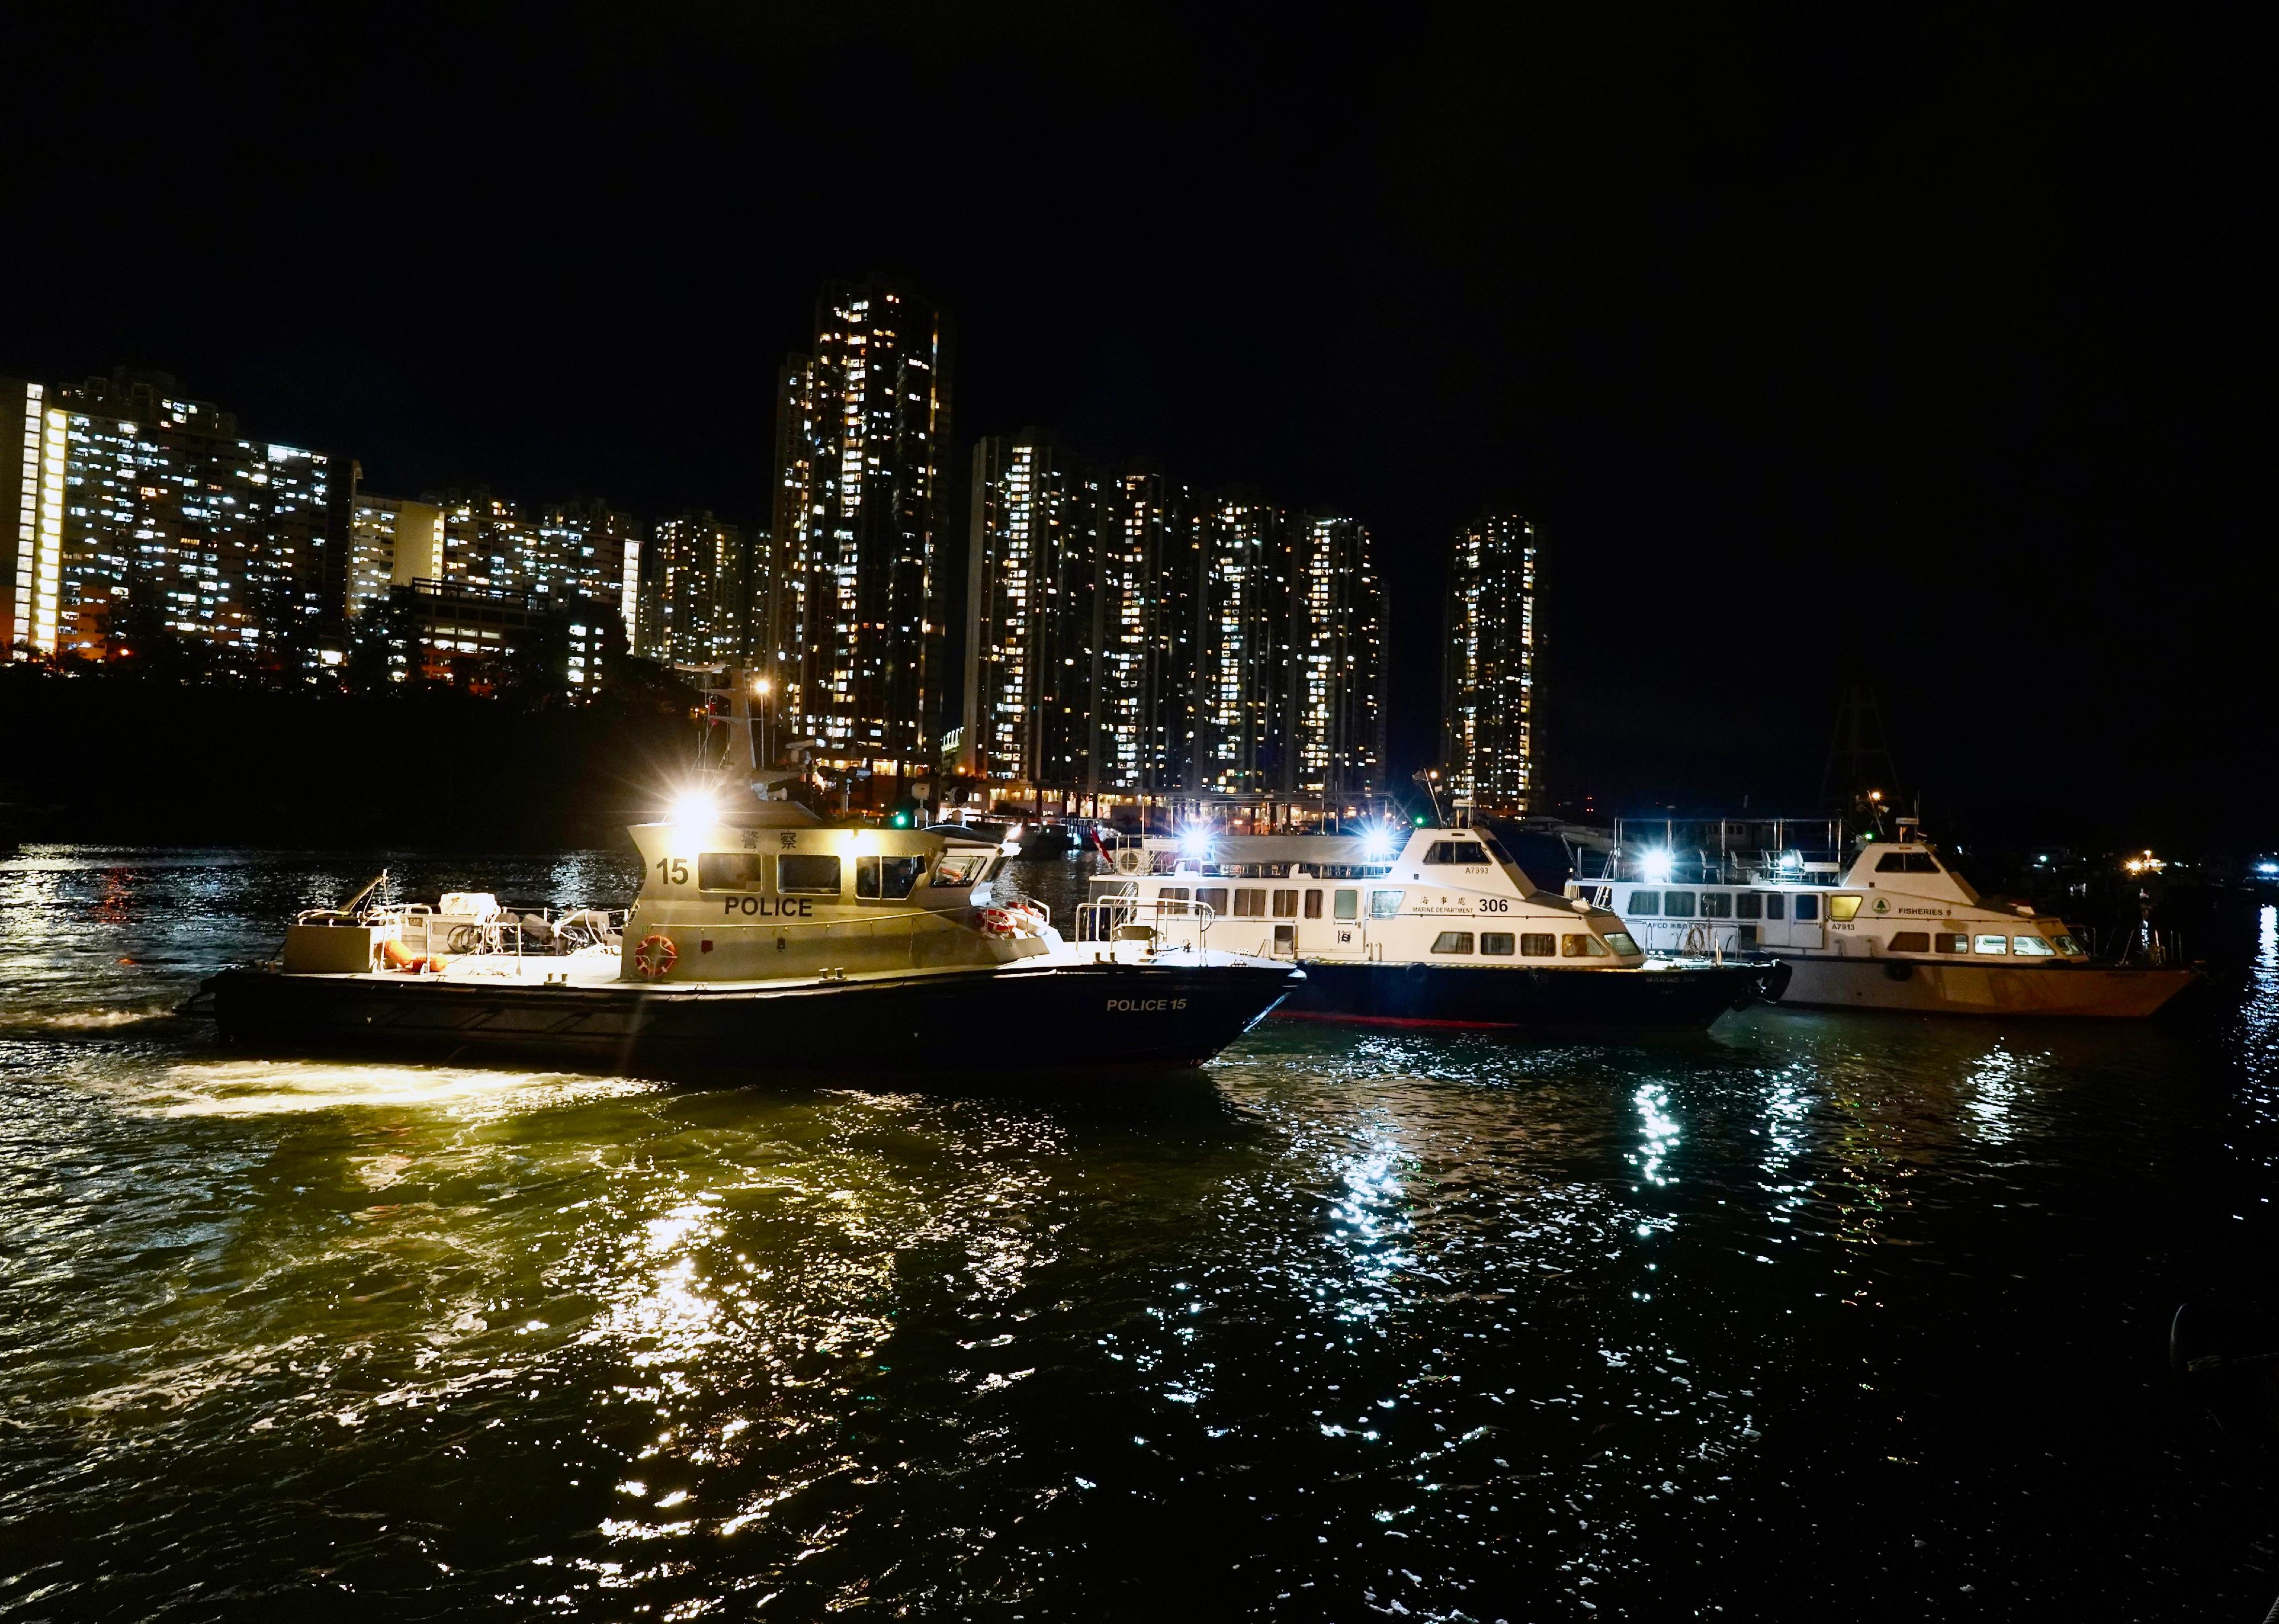 海事处于六月十四日和六月十八日晚上联同警务处及渔农自然护理署分别在香港东部及南部水域进行打击不适当使用光灯捕鱼及非法捕鱼的联合行动。